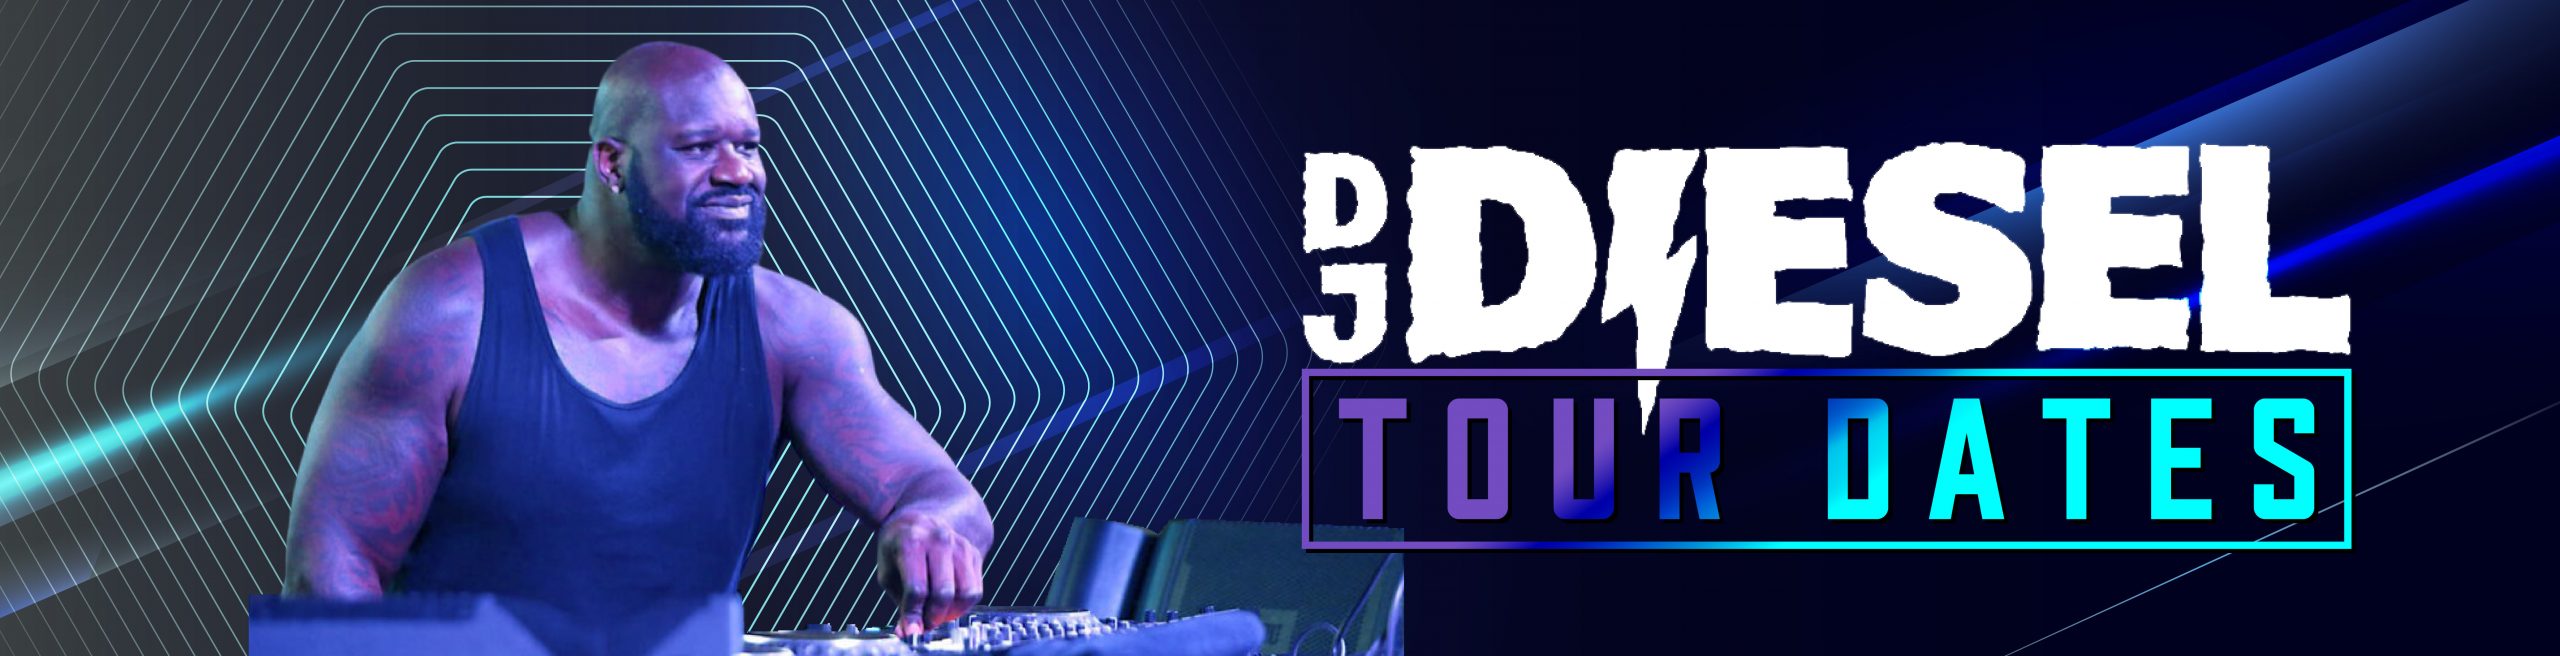 DJ Diesel Tour Dates